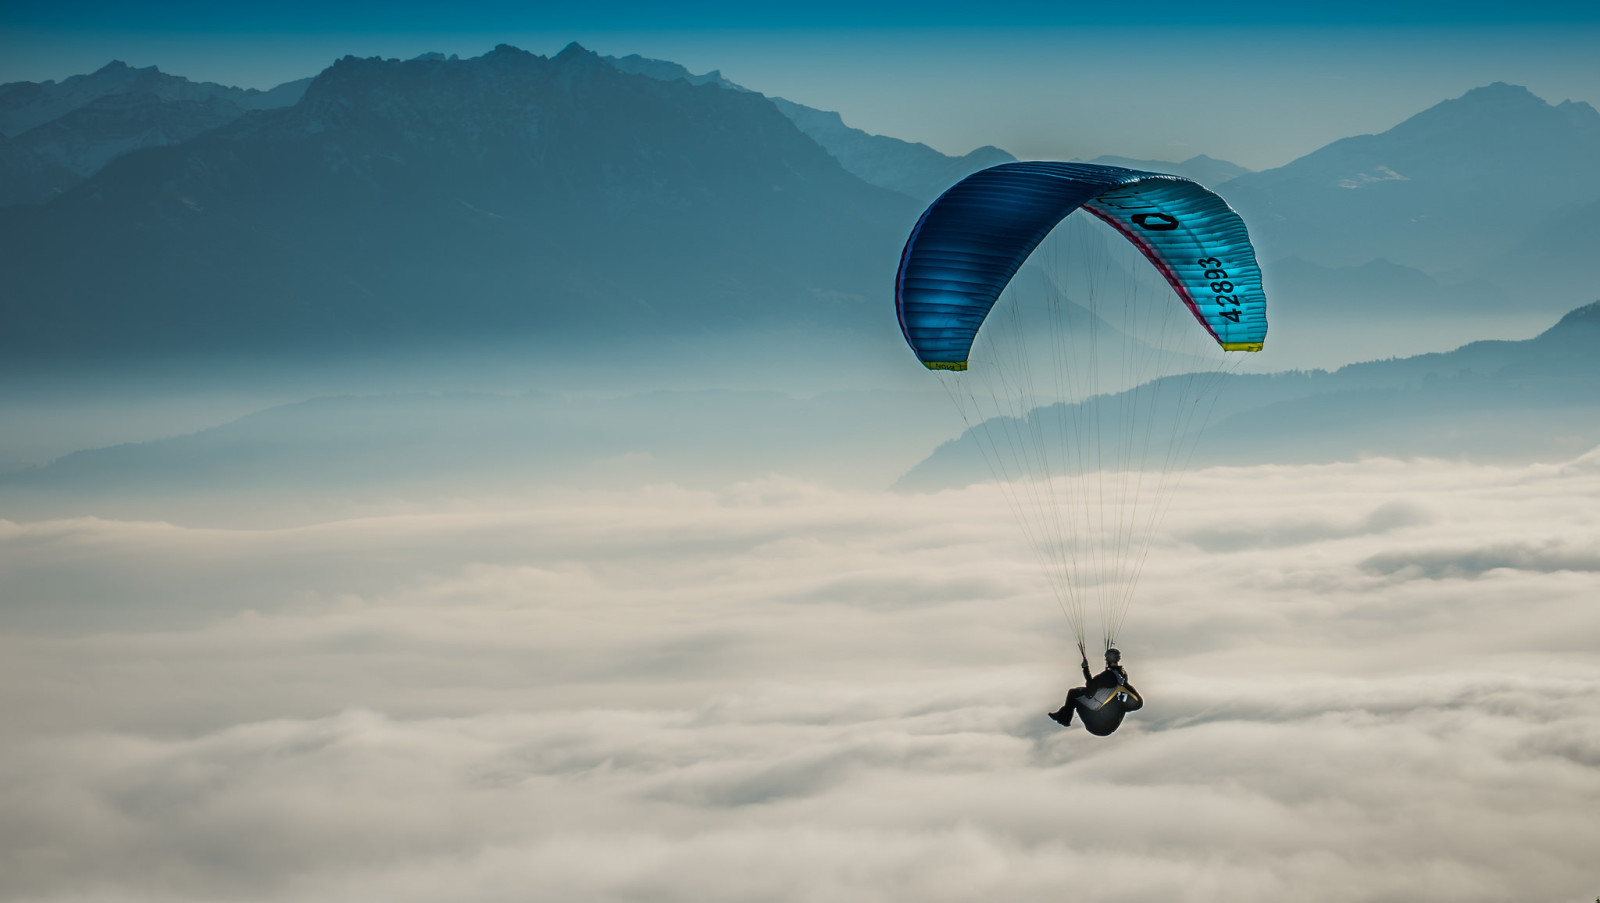 ท้องฟ้า, กีฬา, paraglider